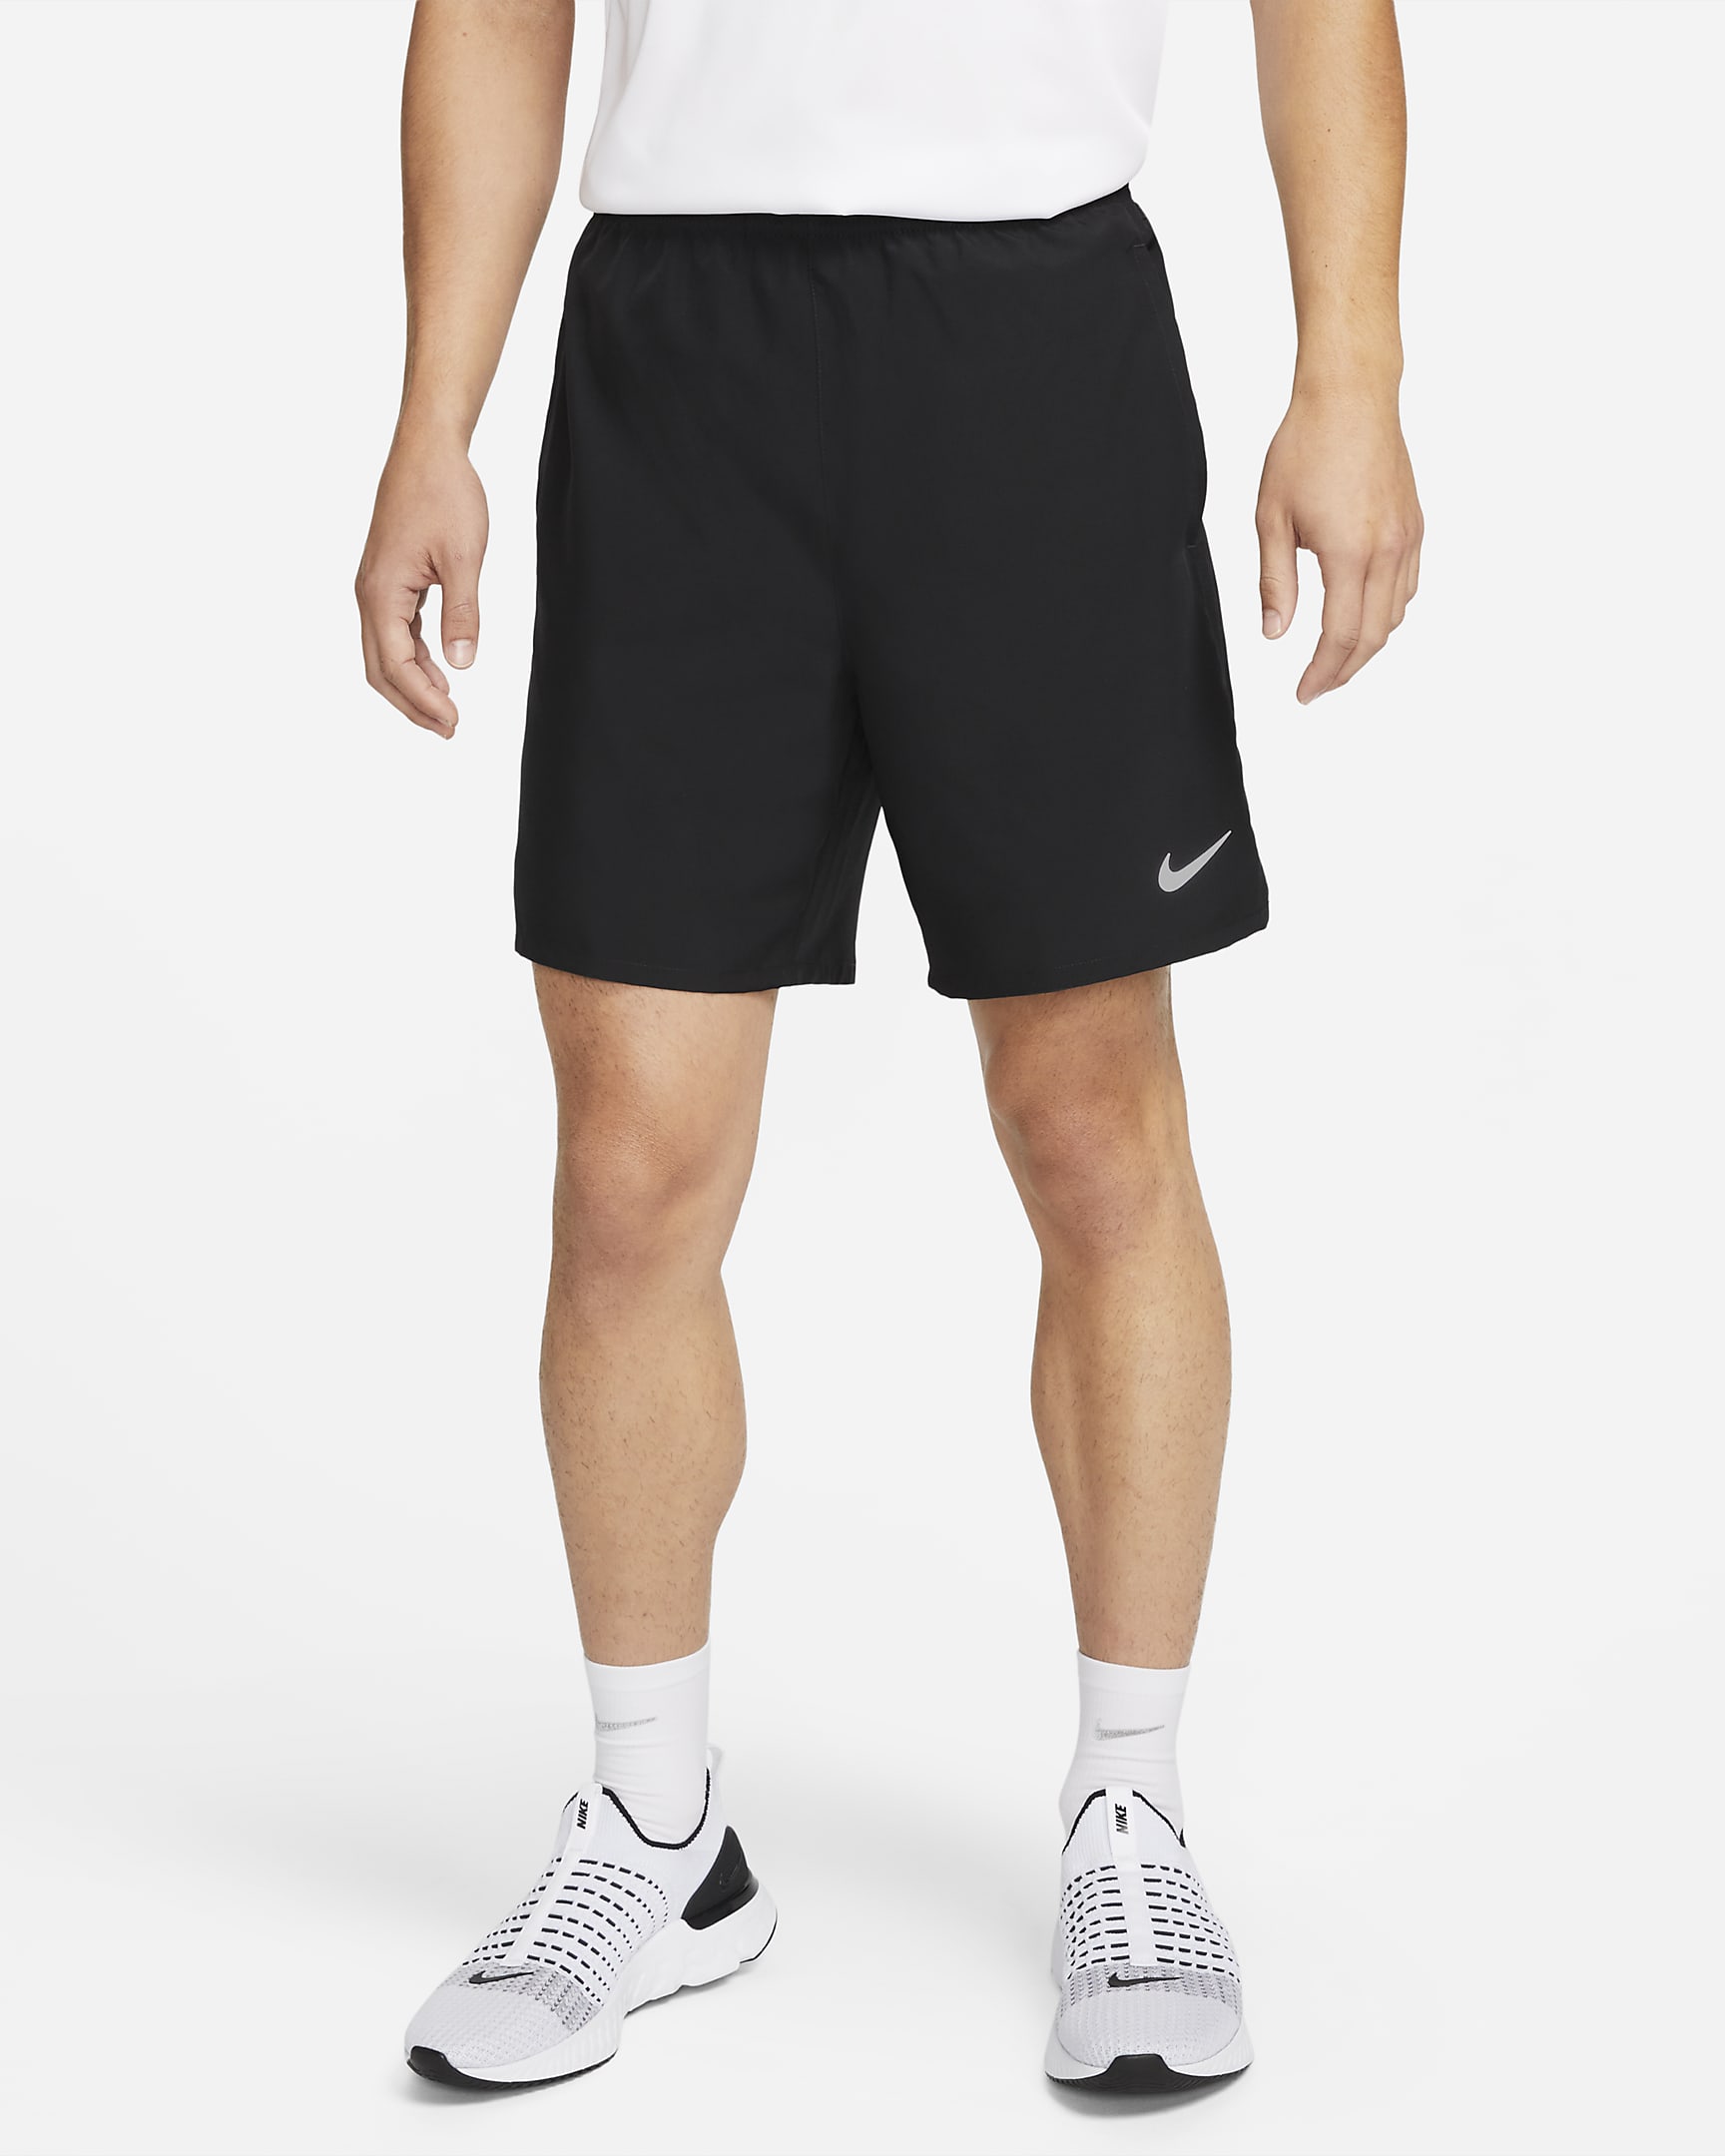 Nike Dri-FIT Challenger Men's 18cm (approx.) Unlined Versatile Shorts ...